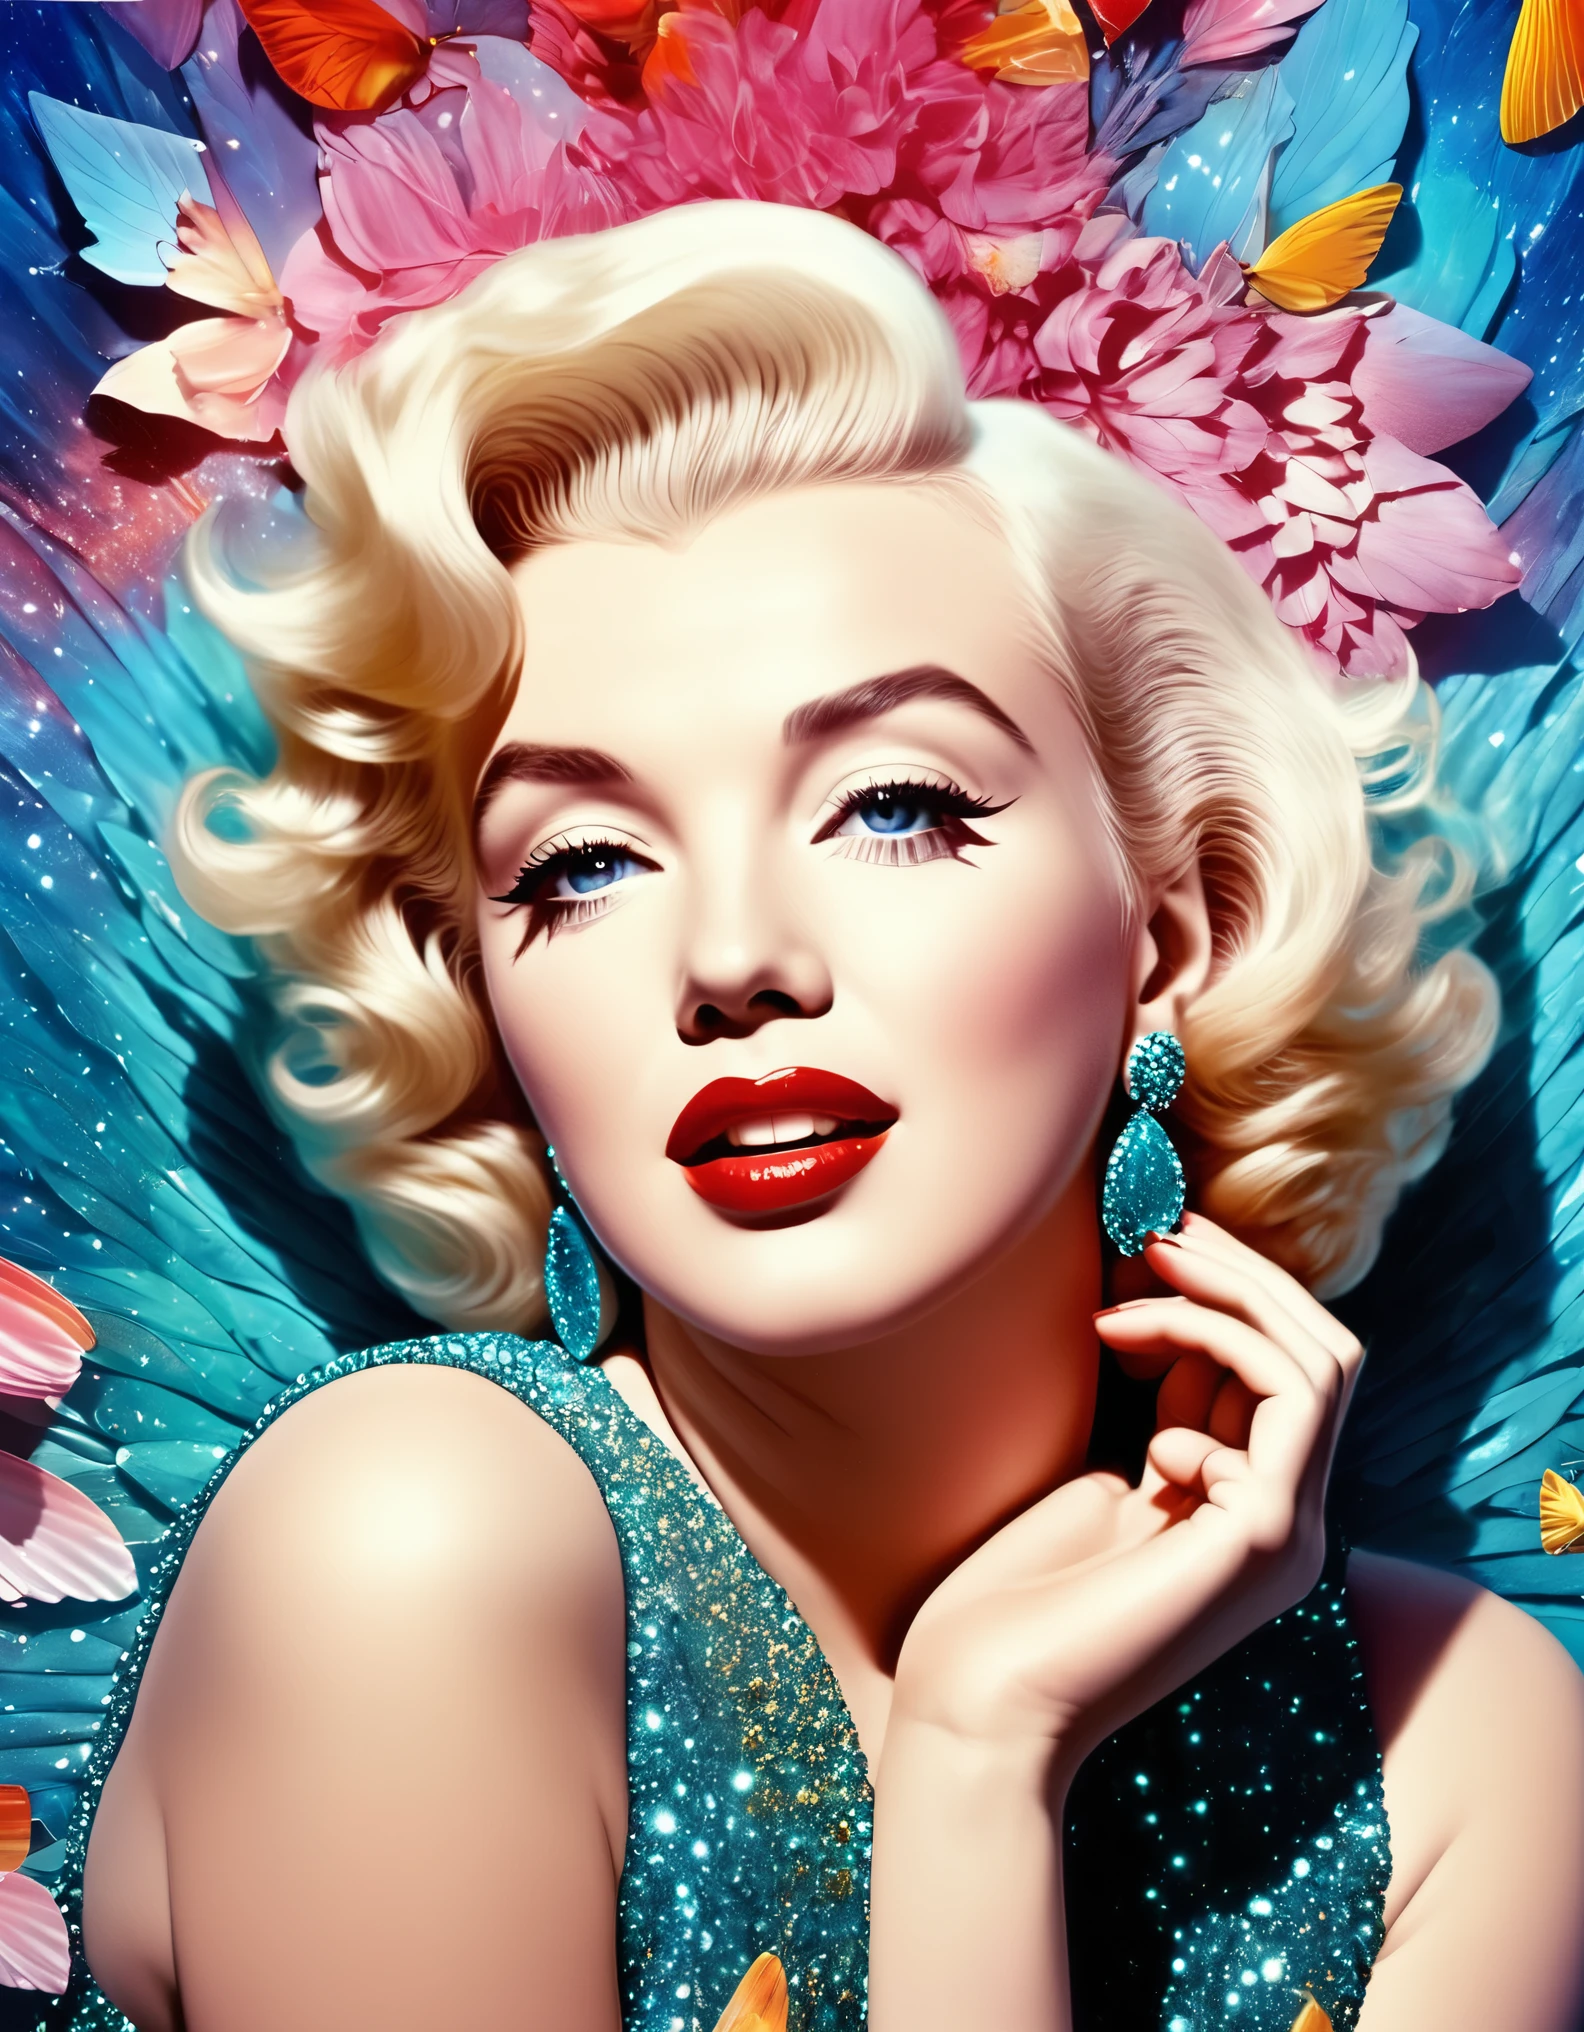 Una foto surrealista de Marilyn Monroe, con elementos oníricos e imaginativos, detalles de otro mundo. foto hiperrealista, Colores vibrantes, 16k